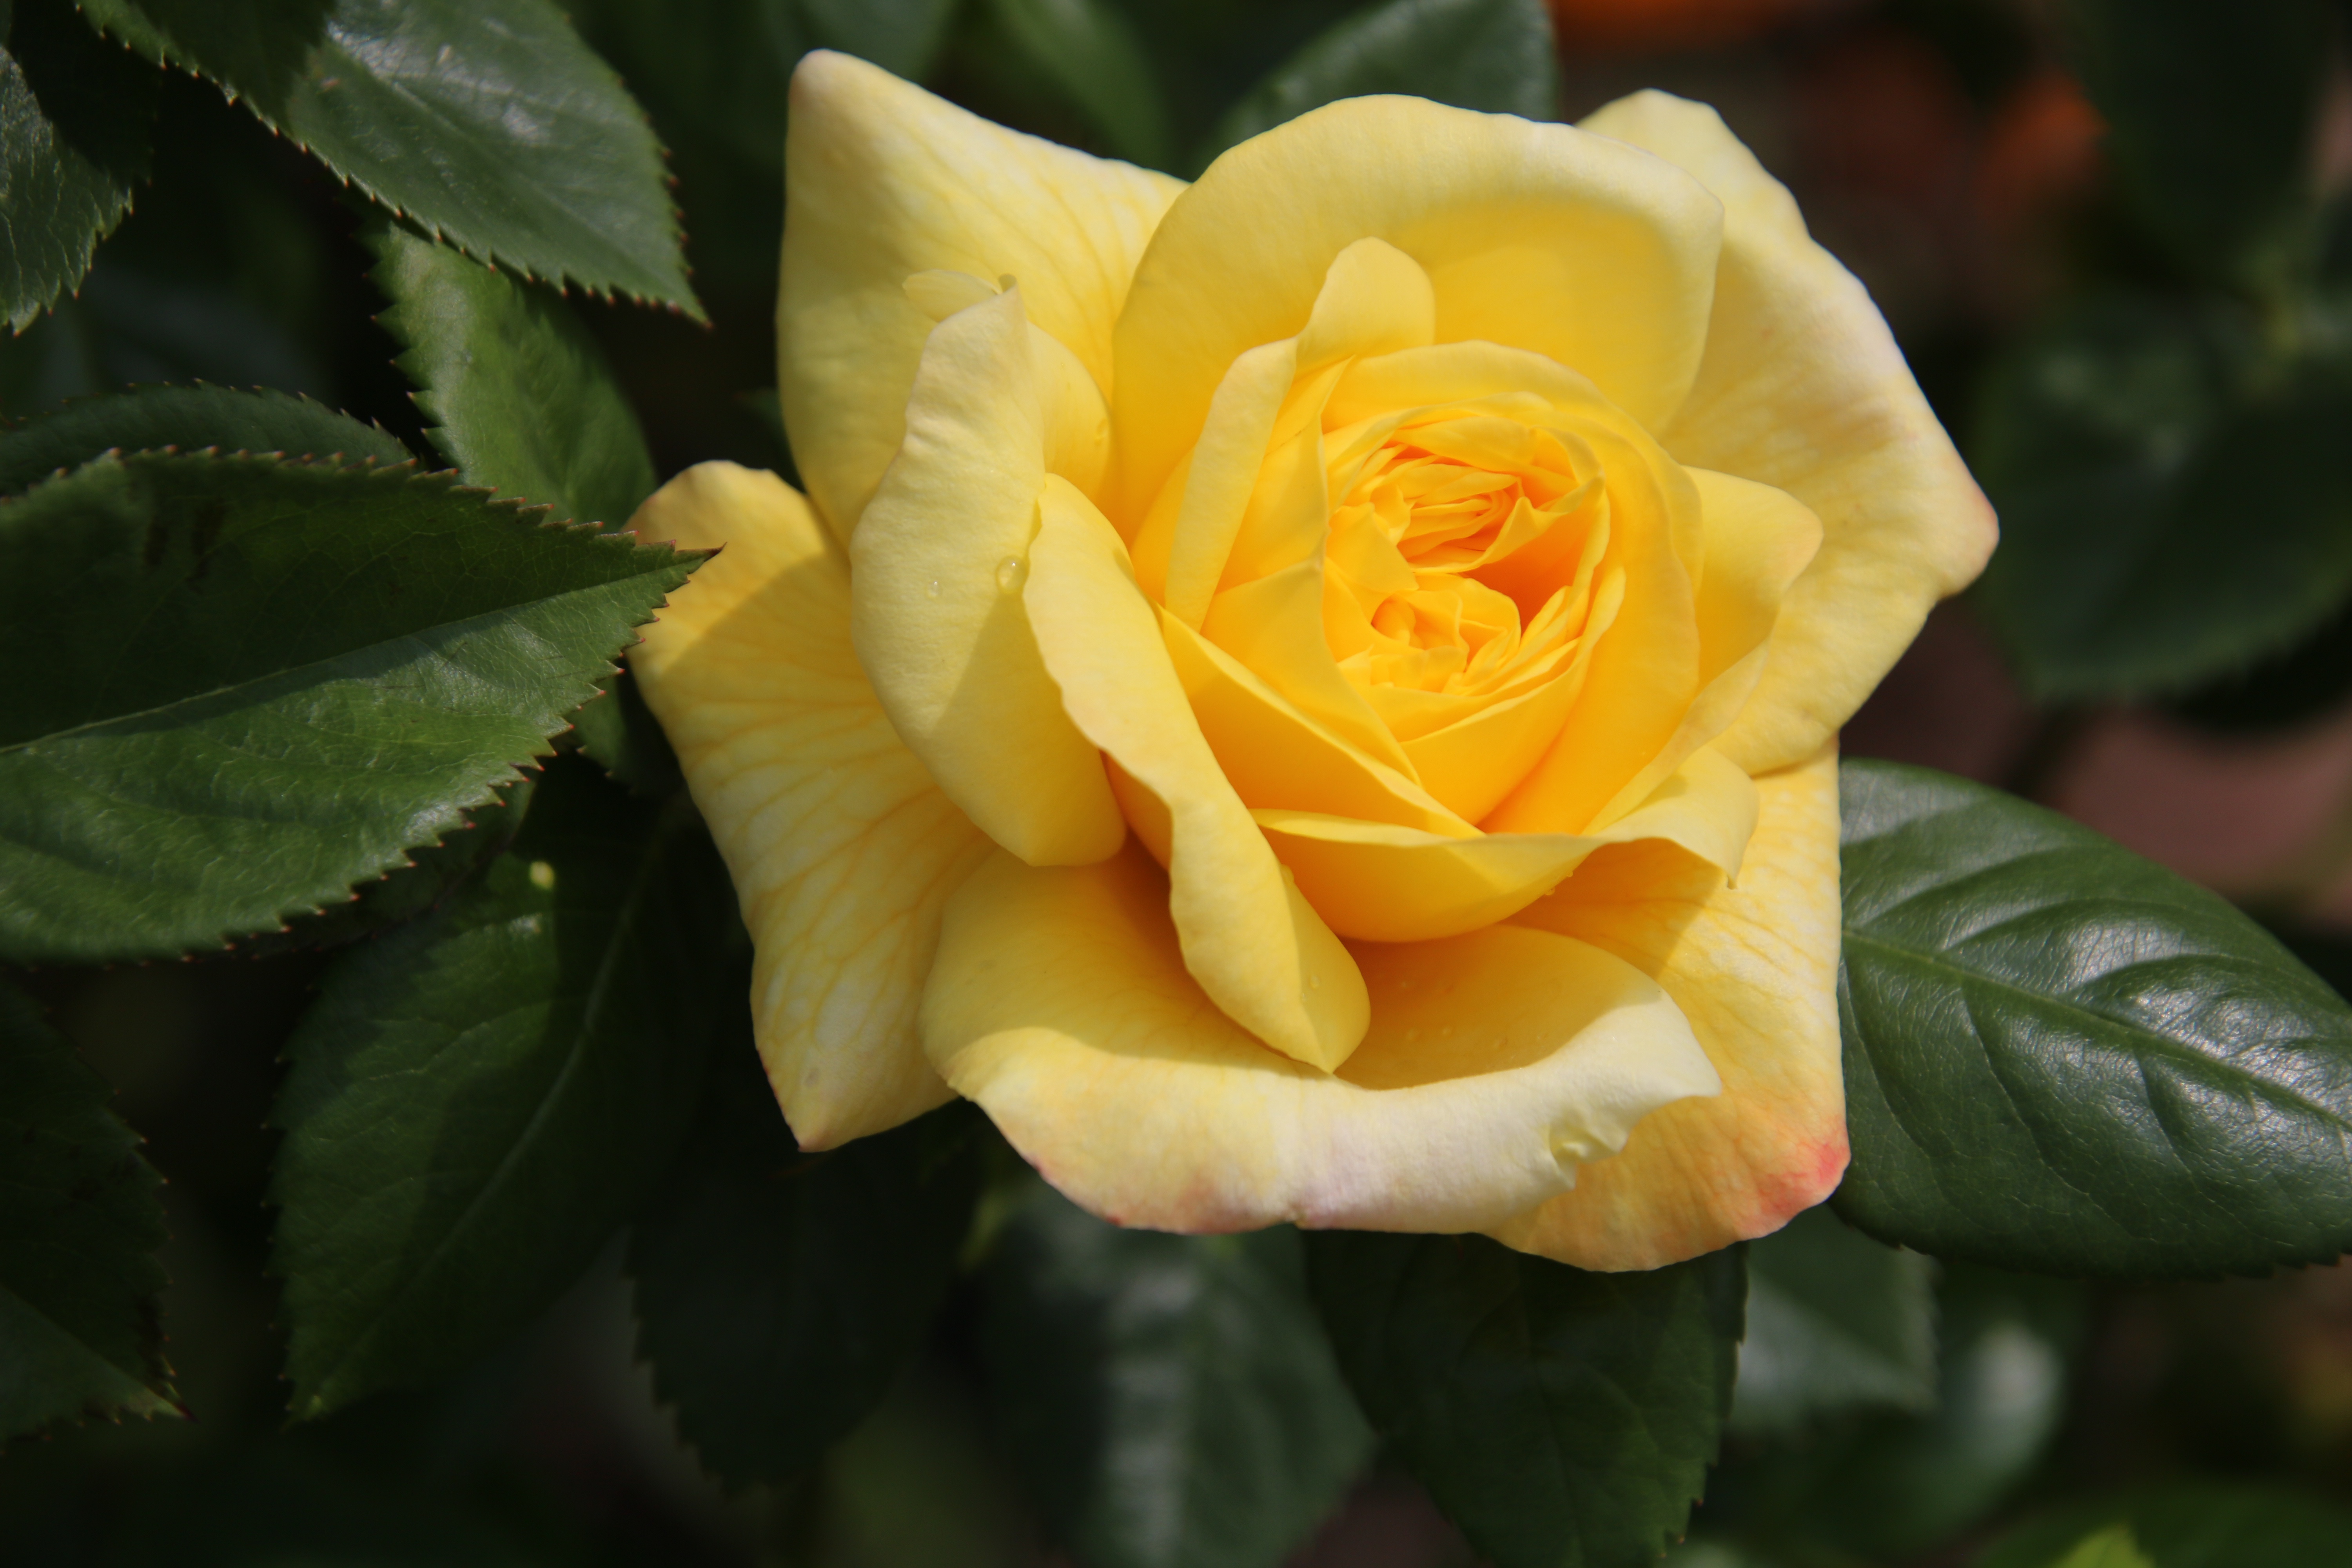 Скачать обои бесплатно Роза, Желтый Цветок, Земля/природа, Макрос, Желтая Роза картинка на рабочий стол ПК